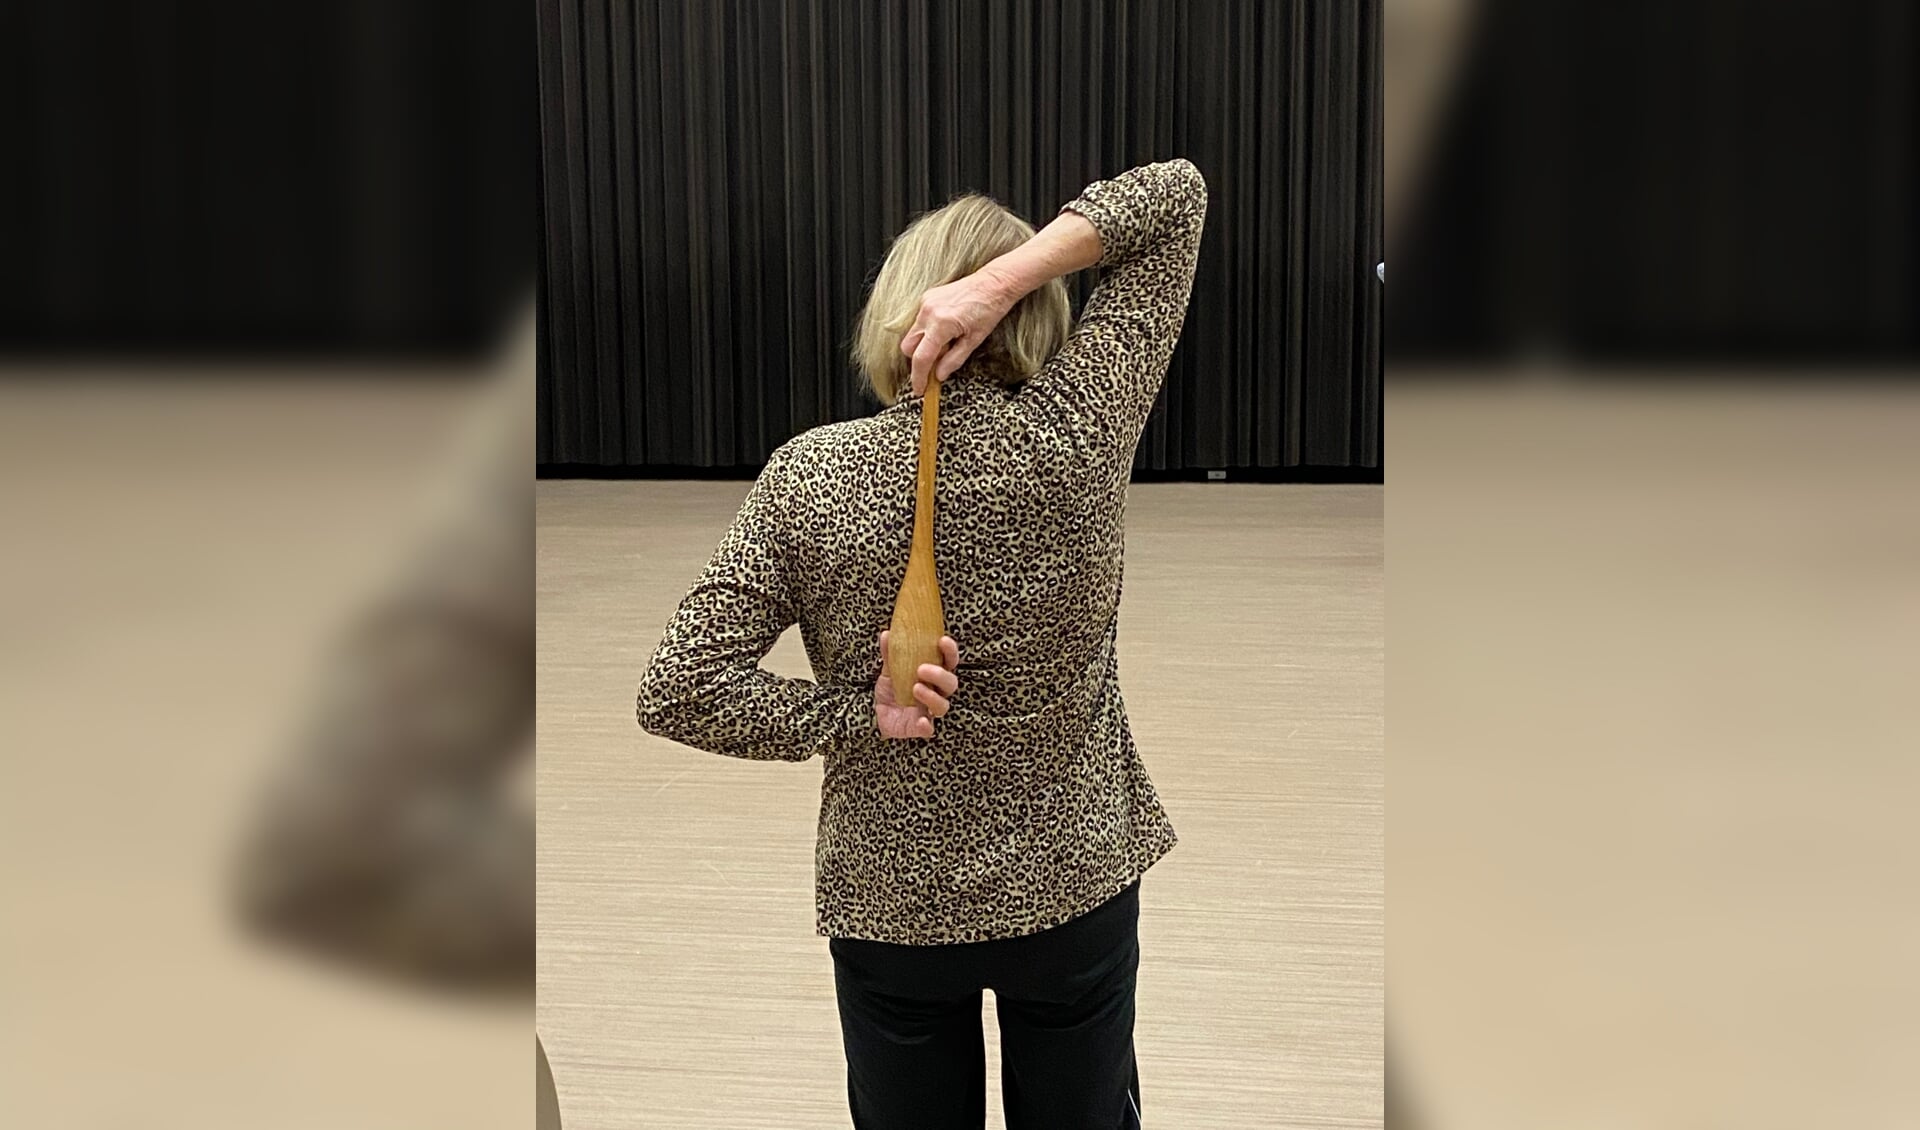 Het aanbod van Onis Welzijn bevat verschillende vormen van bewegen, zoals dansen, gymnastiek en stoelyoga. 